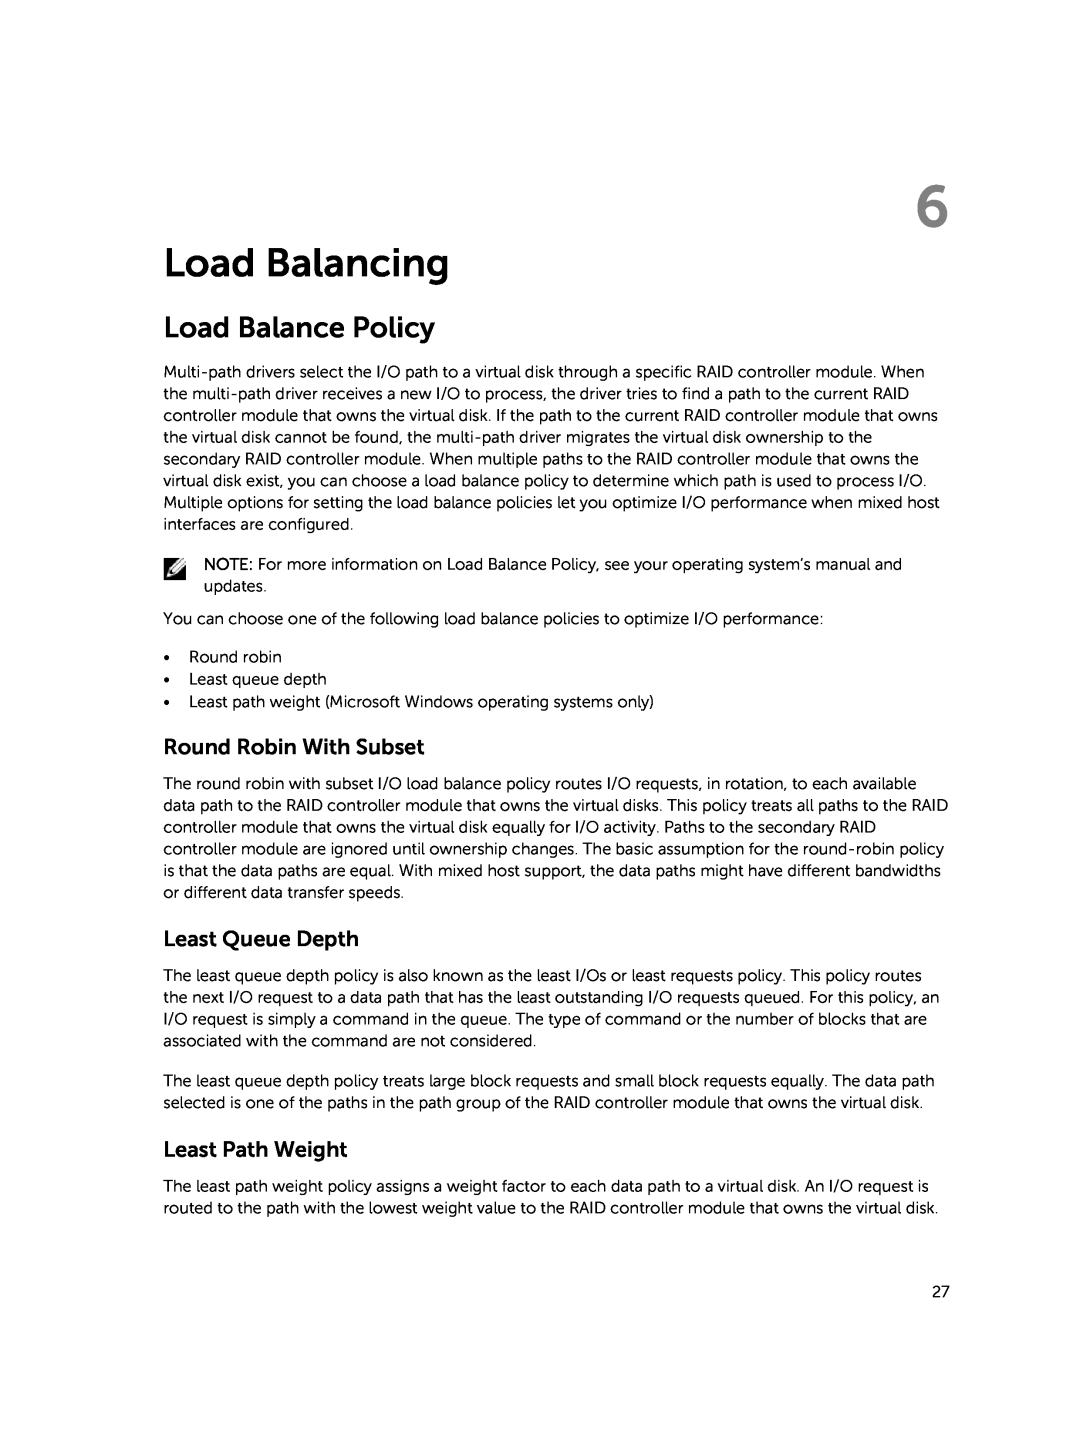 Dell MD3460 manual Load Balancing, Load Balance Policy 